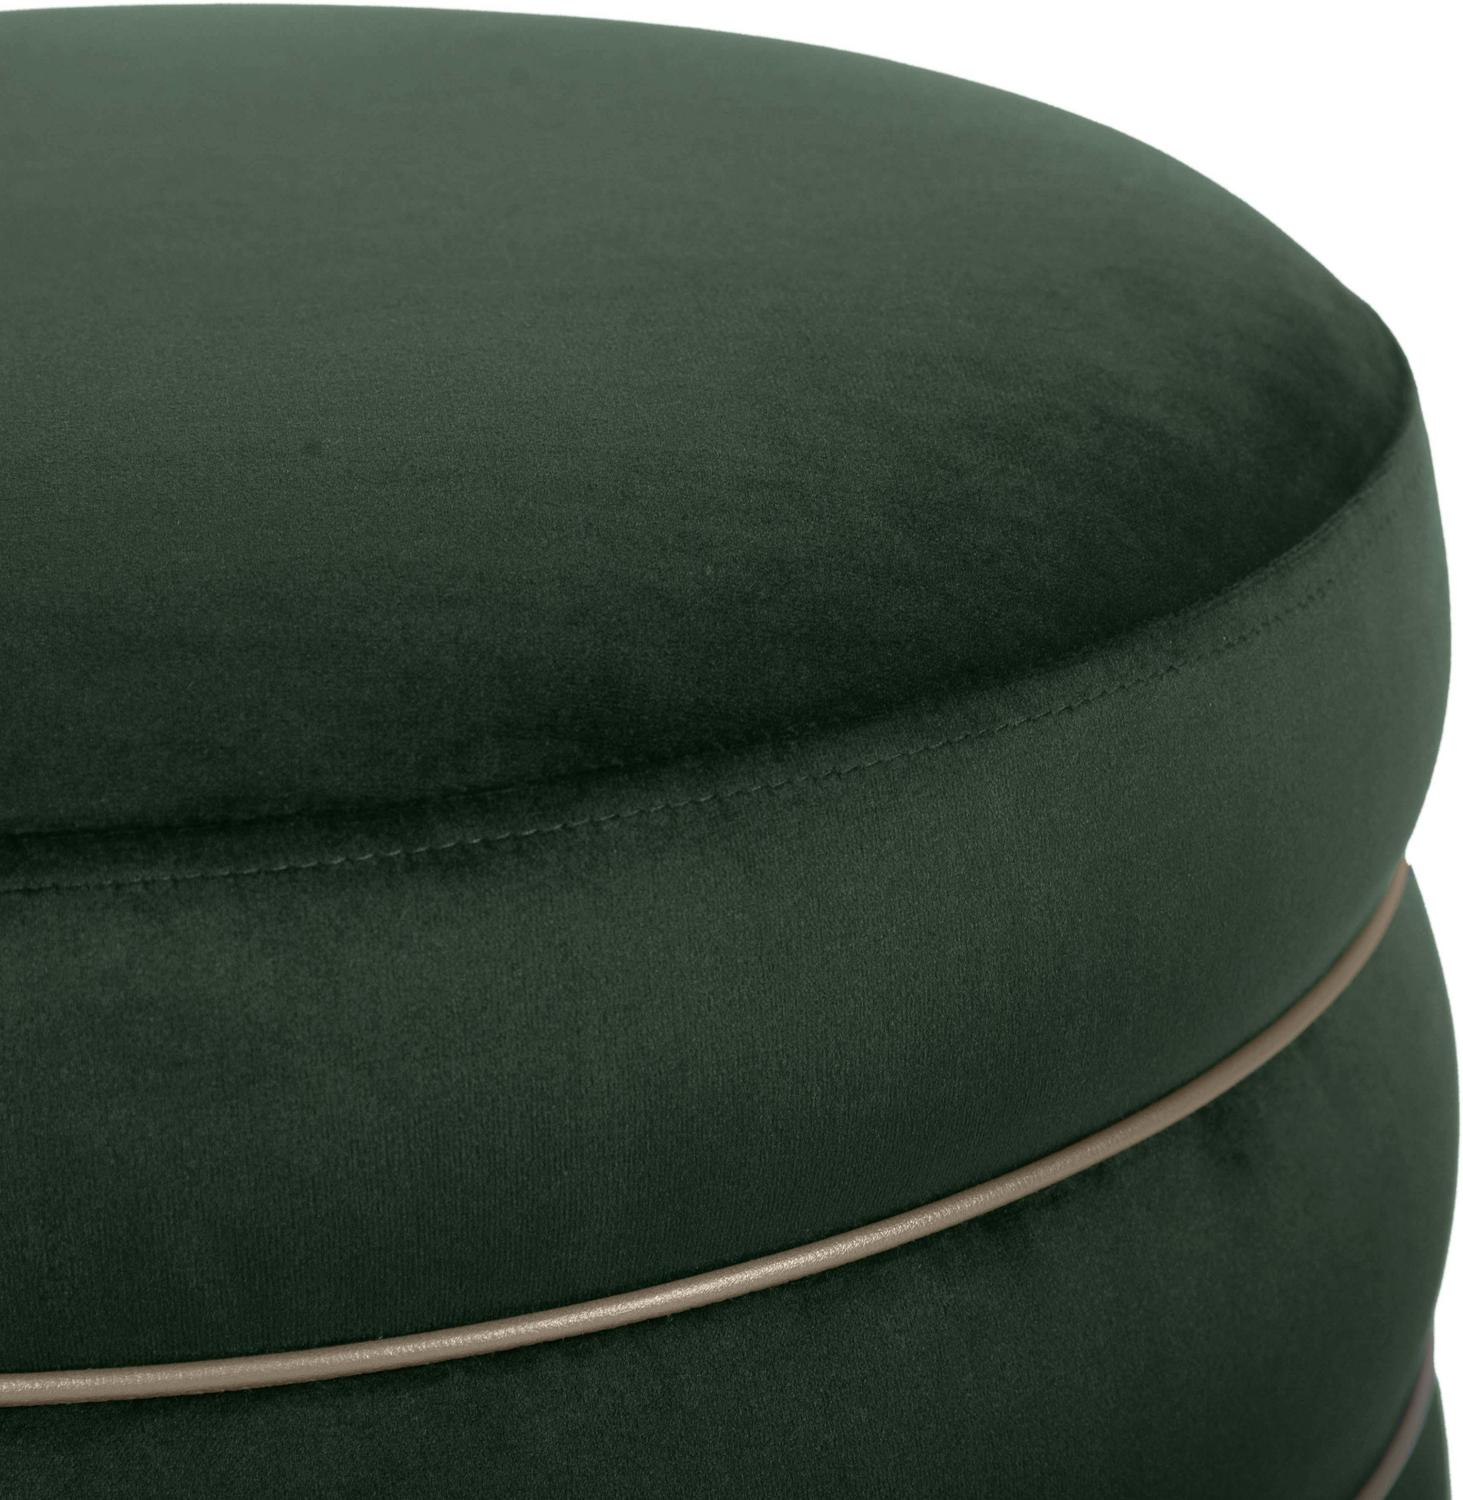 upholstered storage ottoman Tov Furniture Ottomans Green